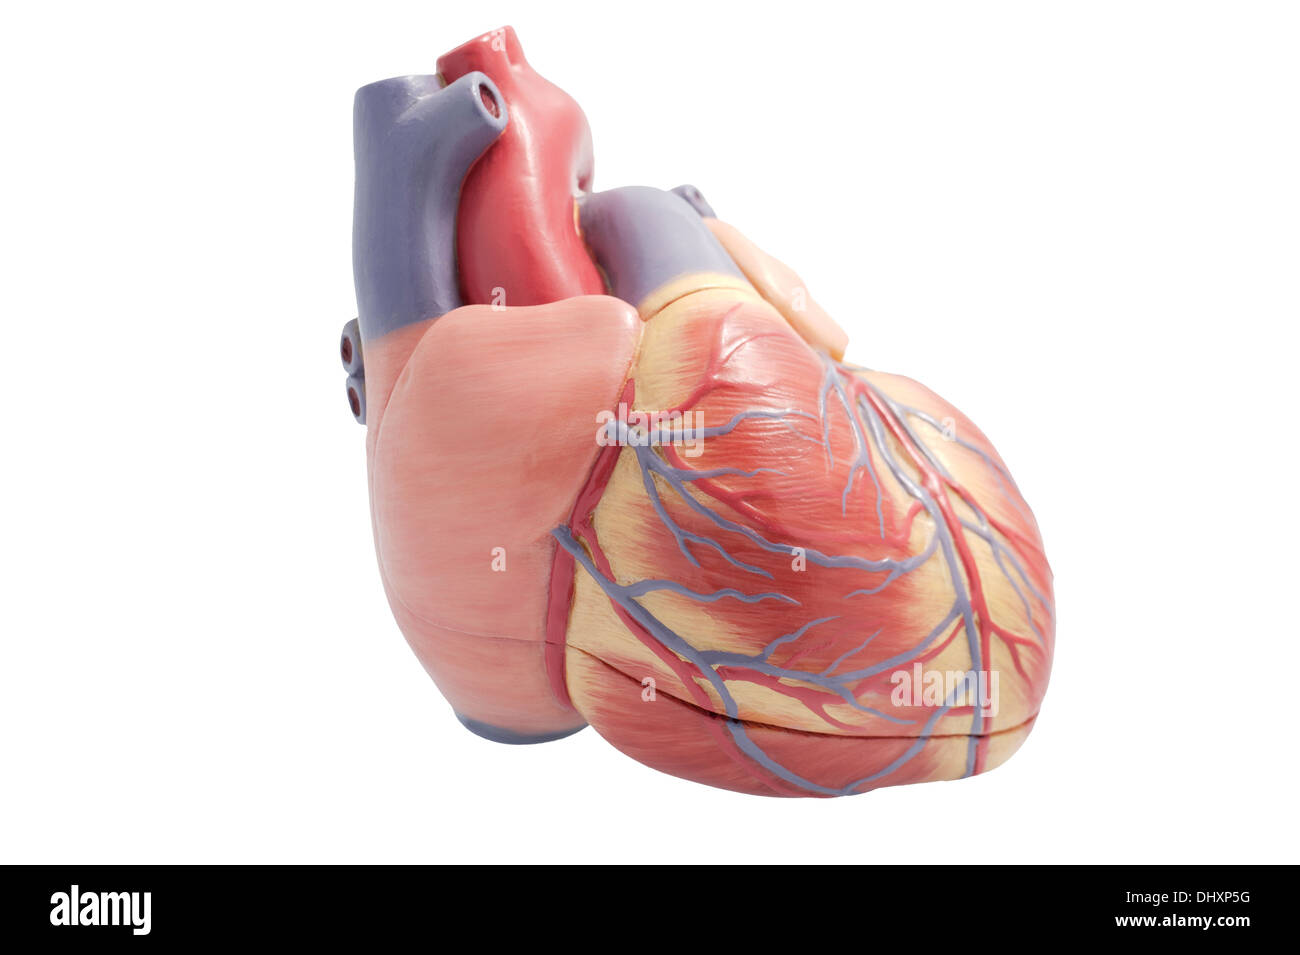 Modello artificiale di un cuore umano. Il ventricolo destro verso la telecamera. Foto Stock